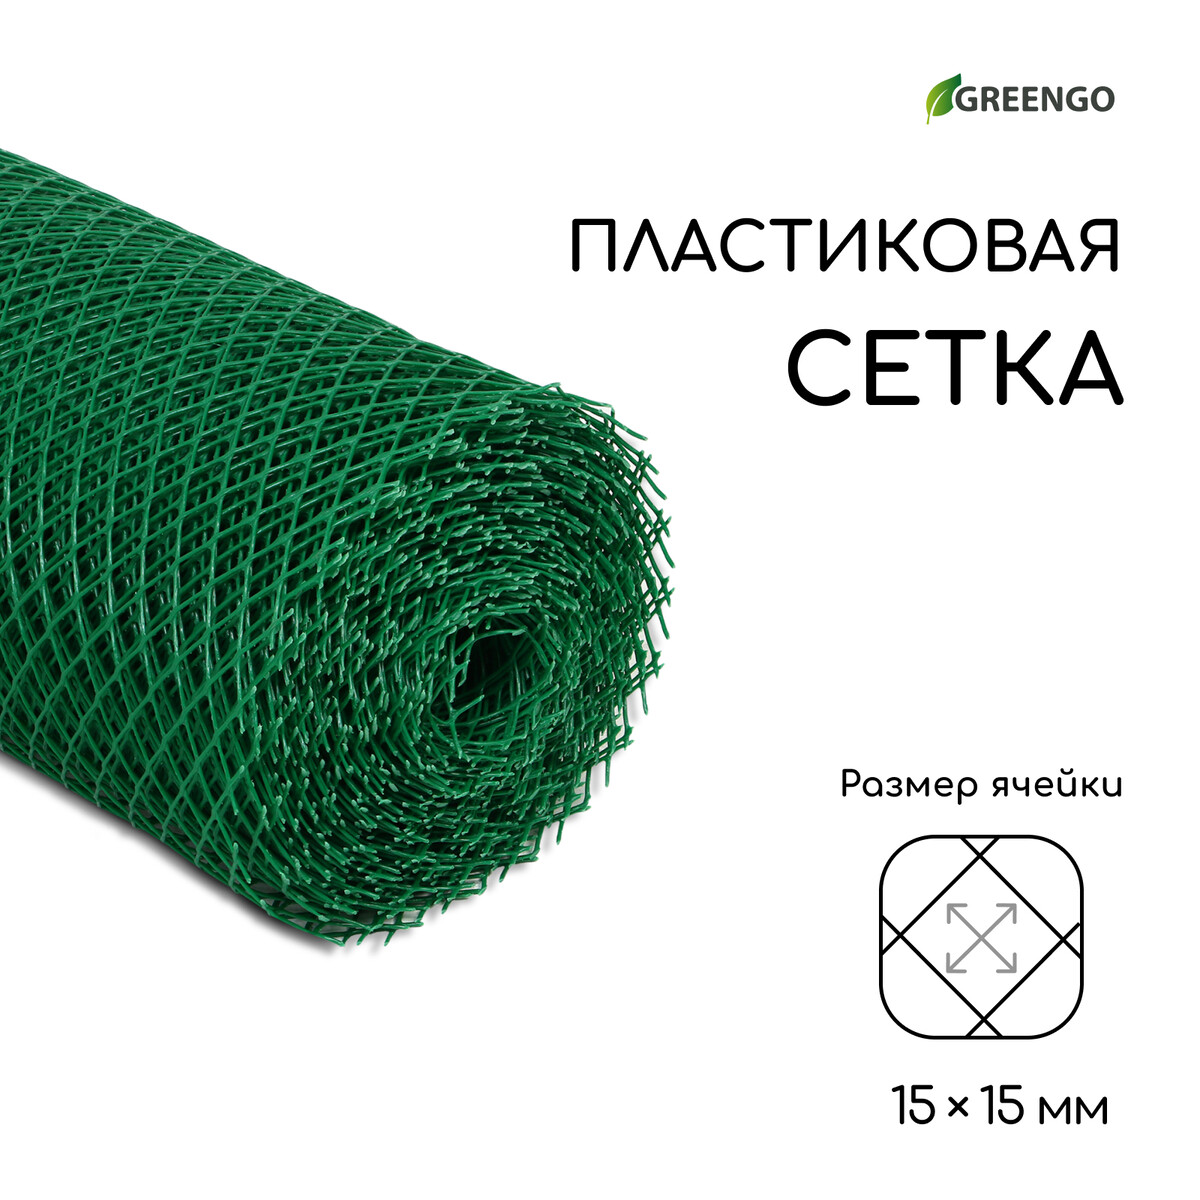 Сетка садовая, 0,5 × 20 м, ячейка ромб 15 × 15 мм, пластиковая, зеленая, greengo